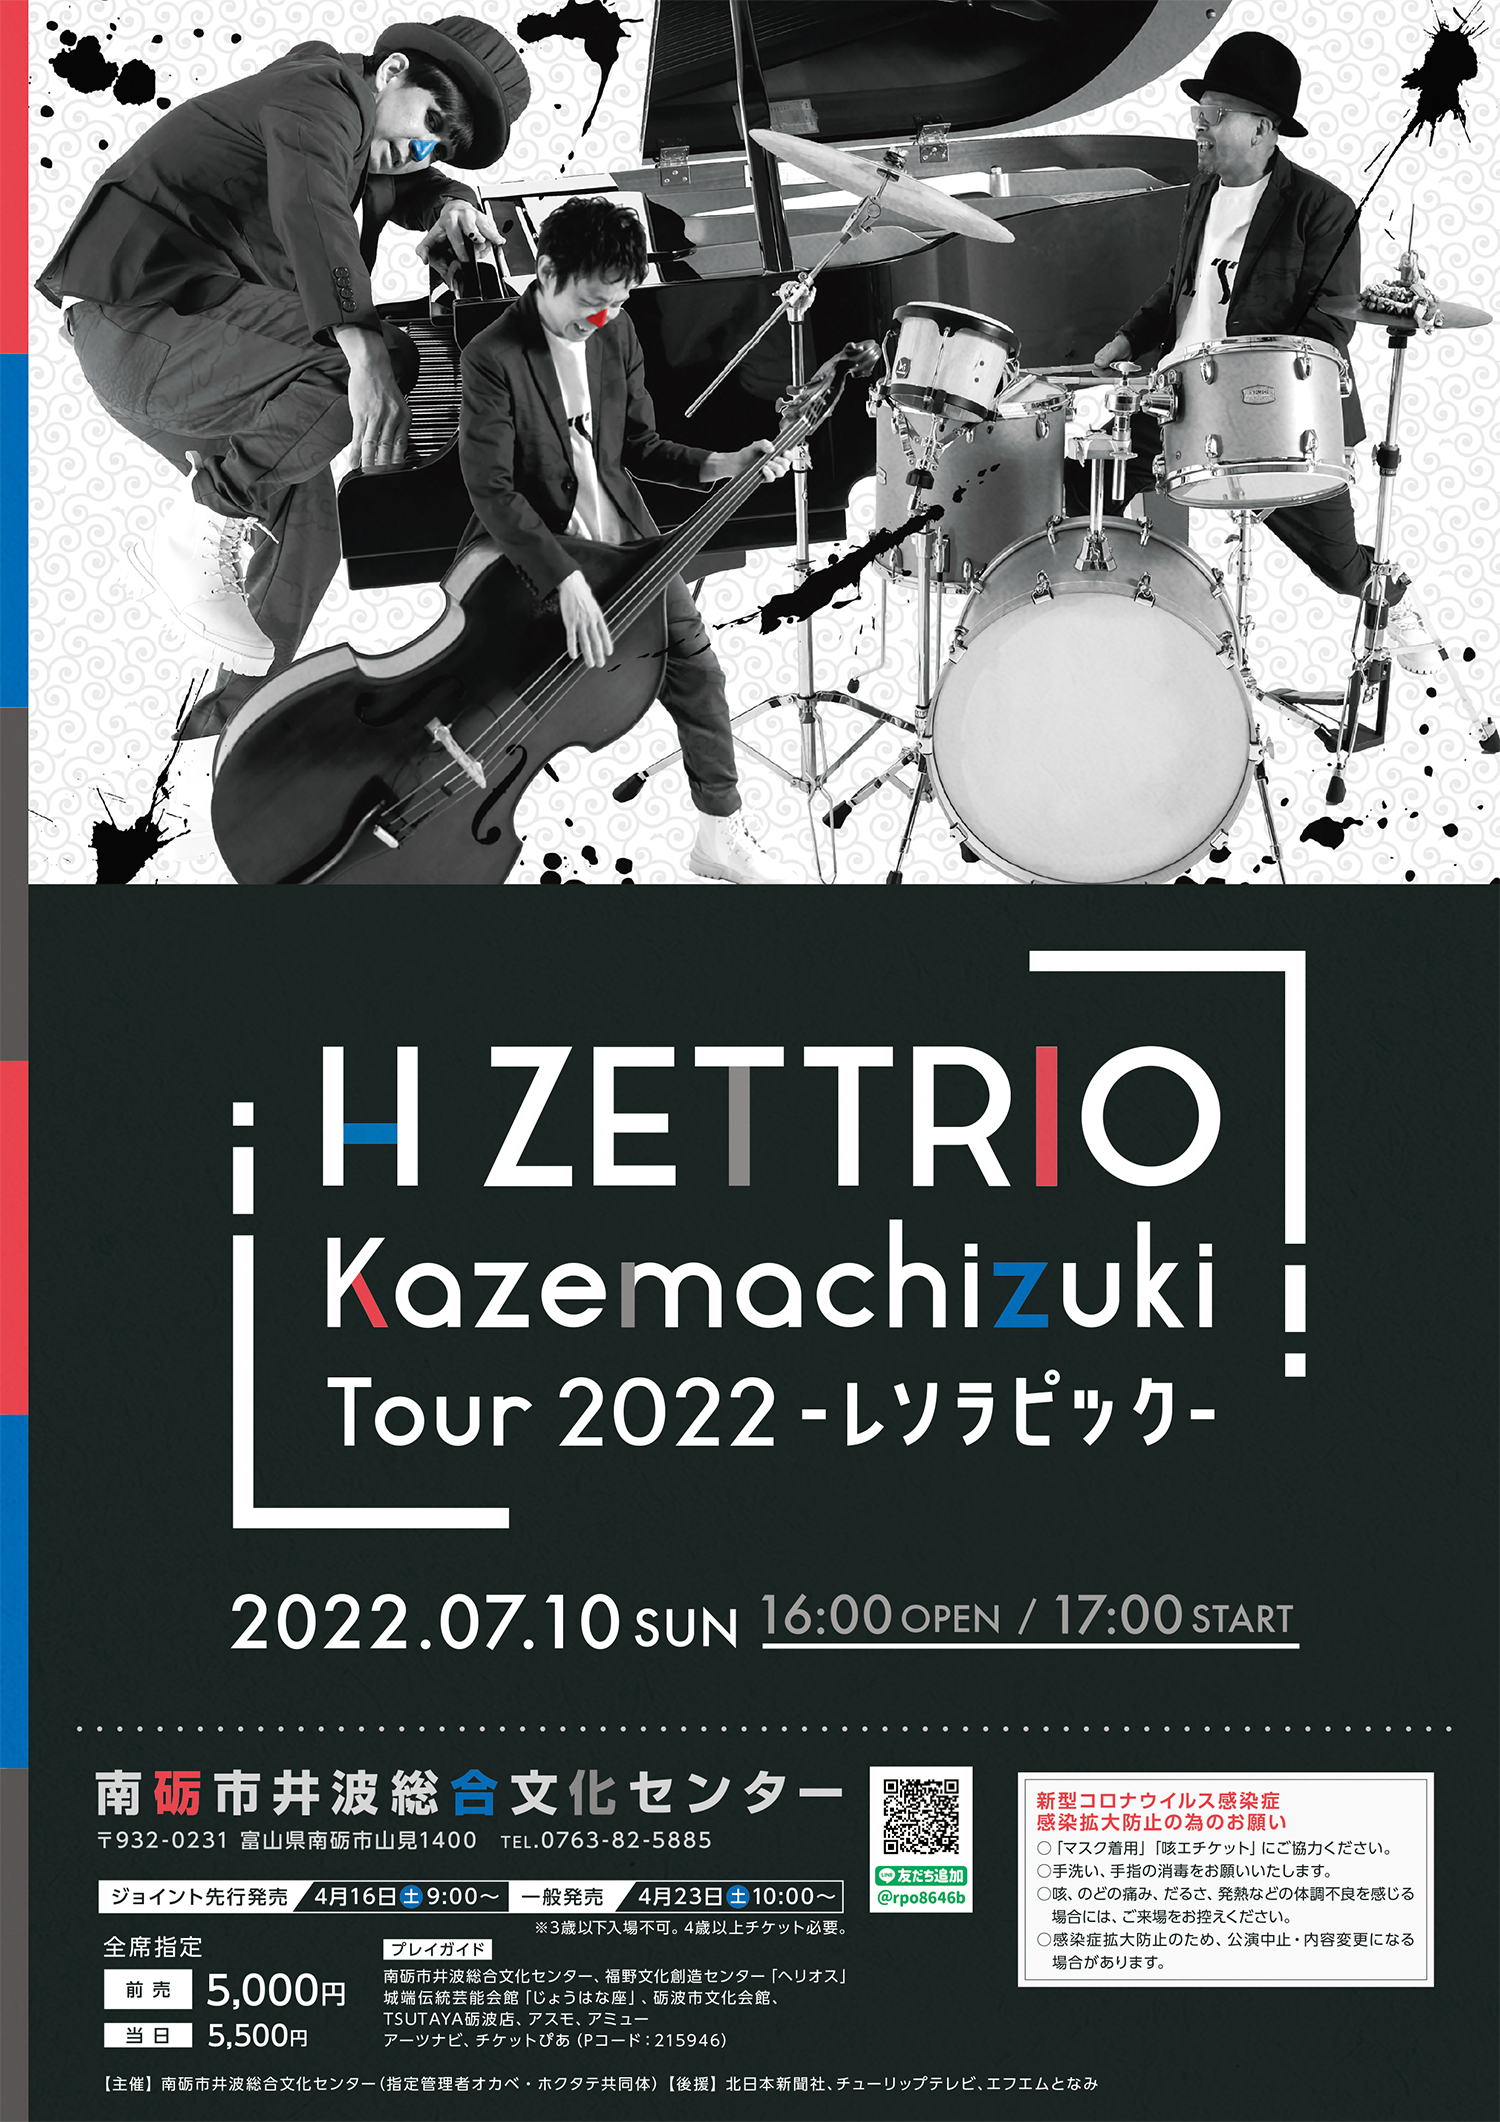 H ZETTRIO コンサートのチラシ・ポスターを制作しました。